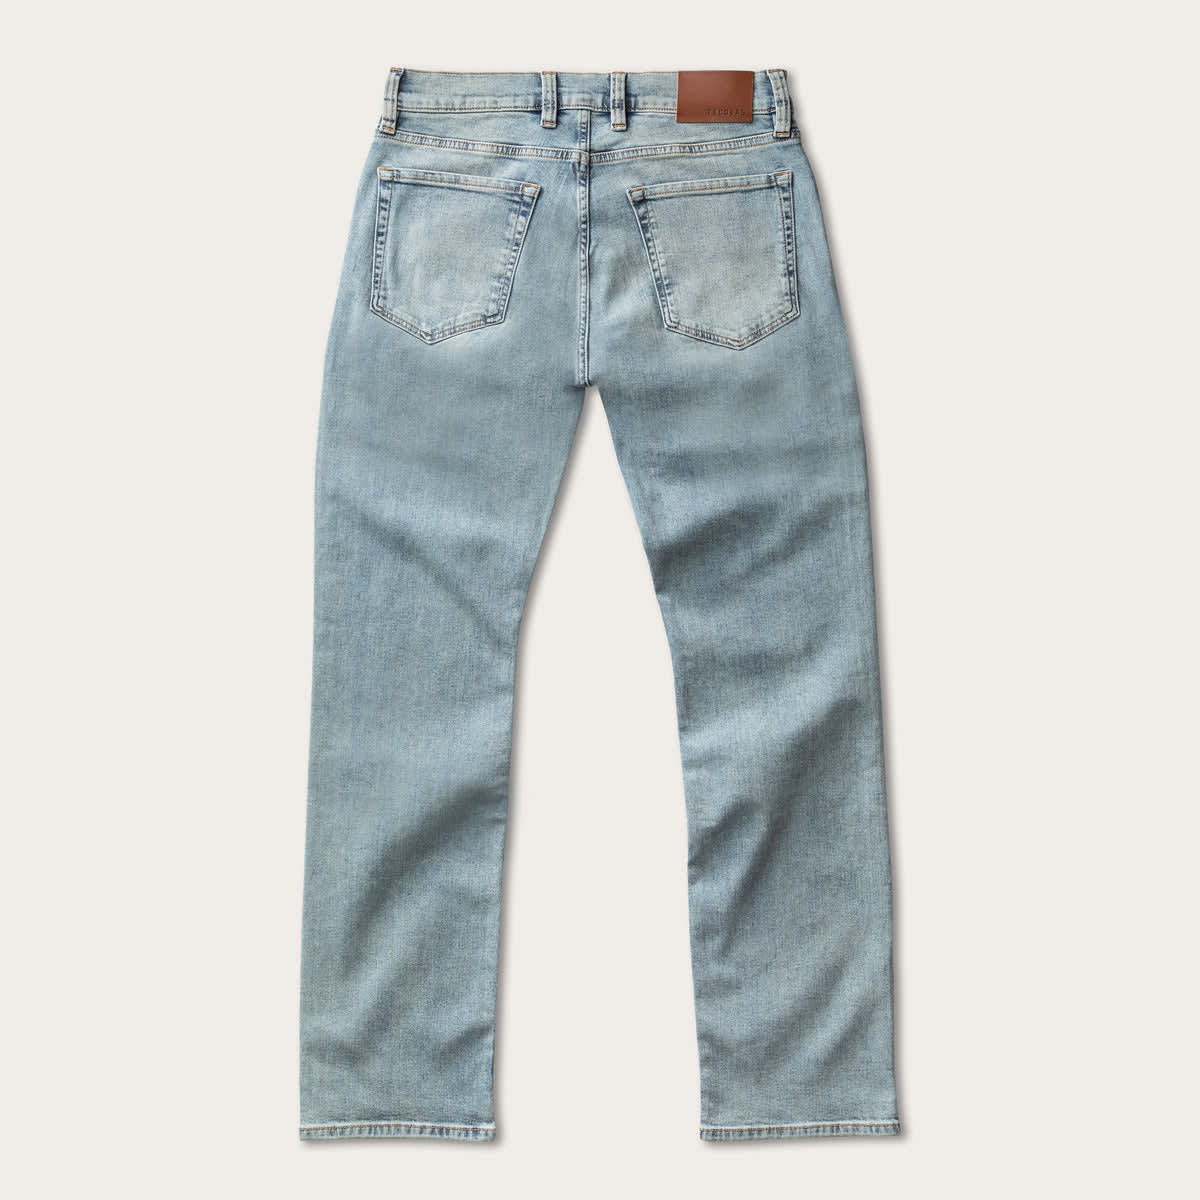 Men's Fit Jeans - Bootcut Jeans for Men